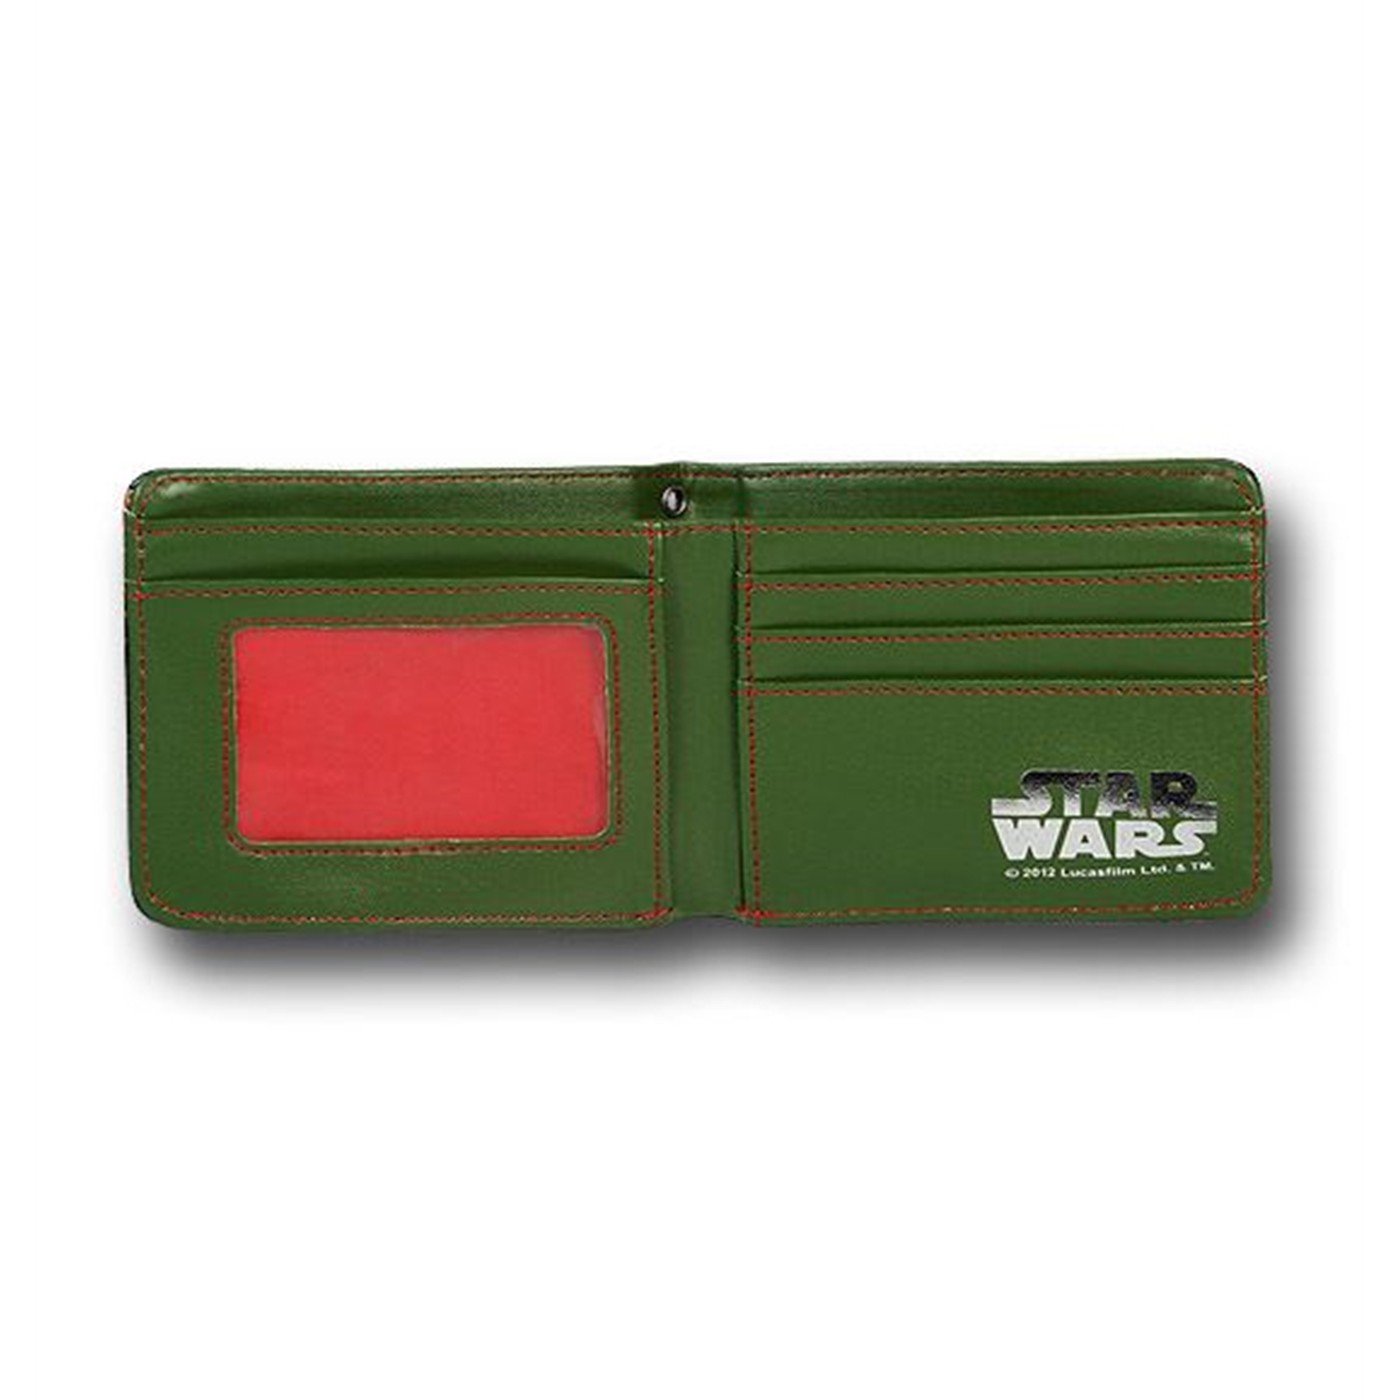 Star Wars Boba Fett Bounty Hunter Wallet